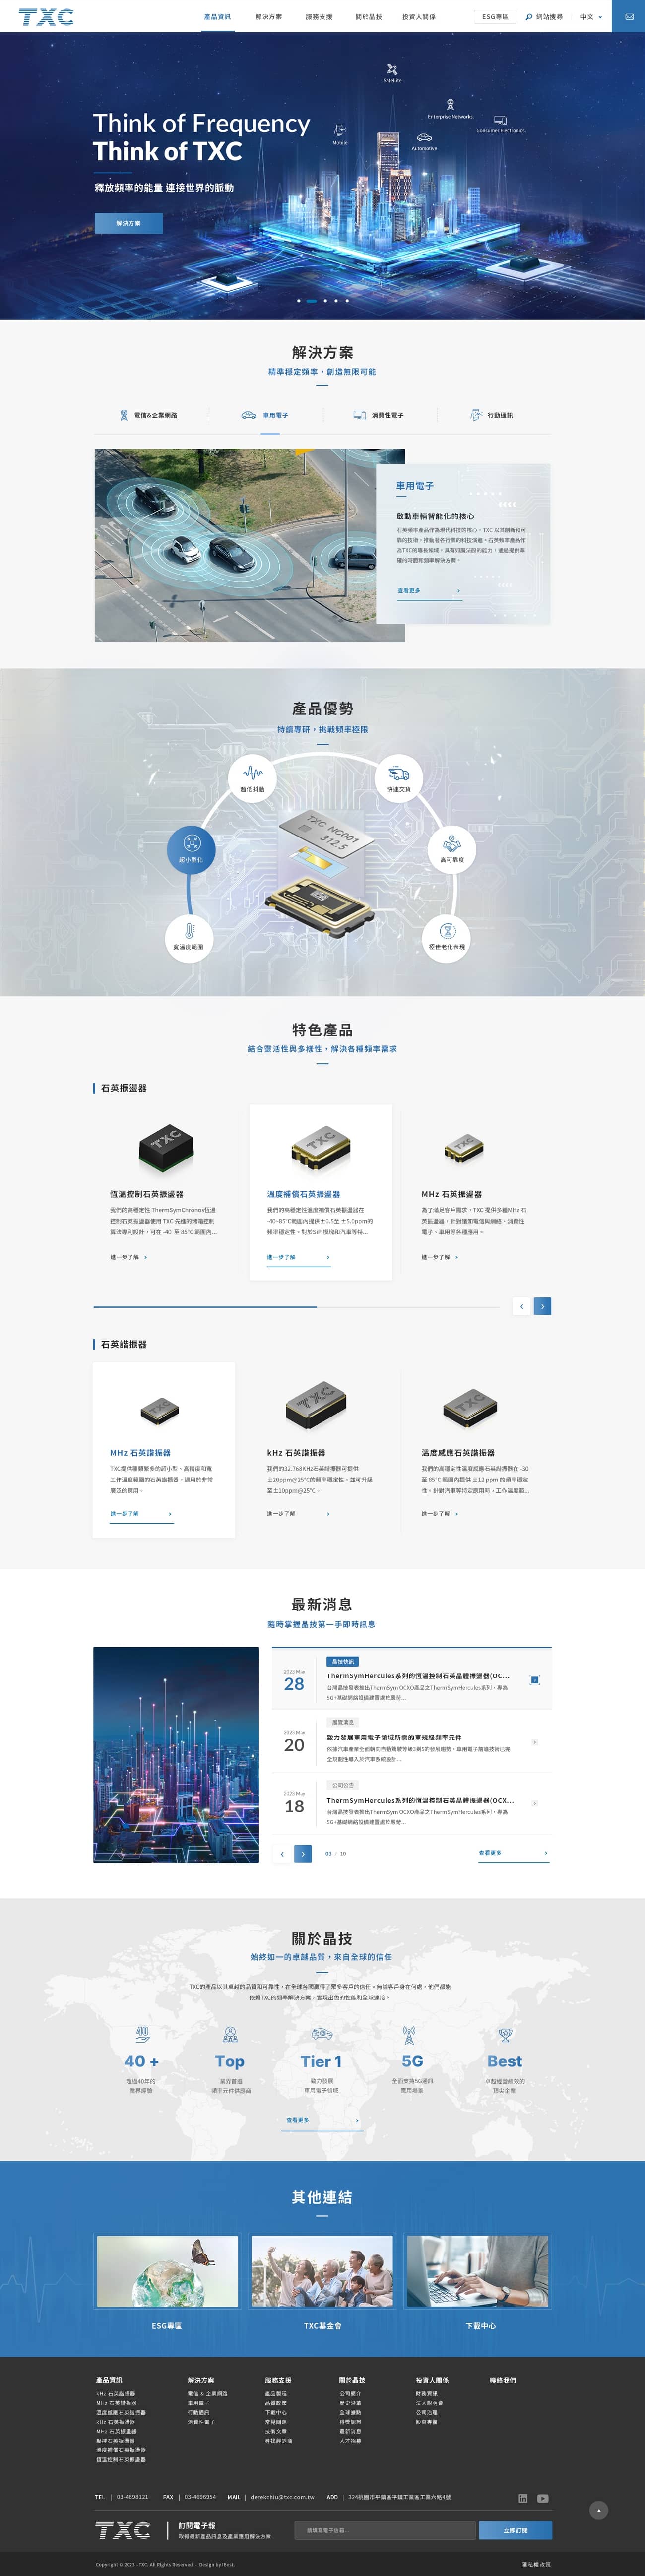 台灣晶技-網頁設計案例